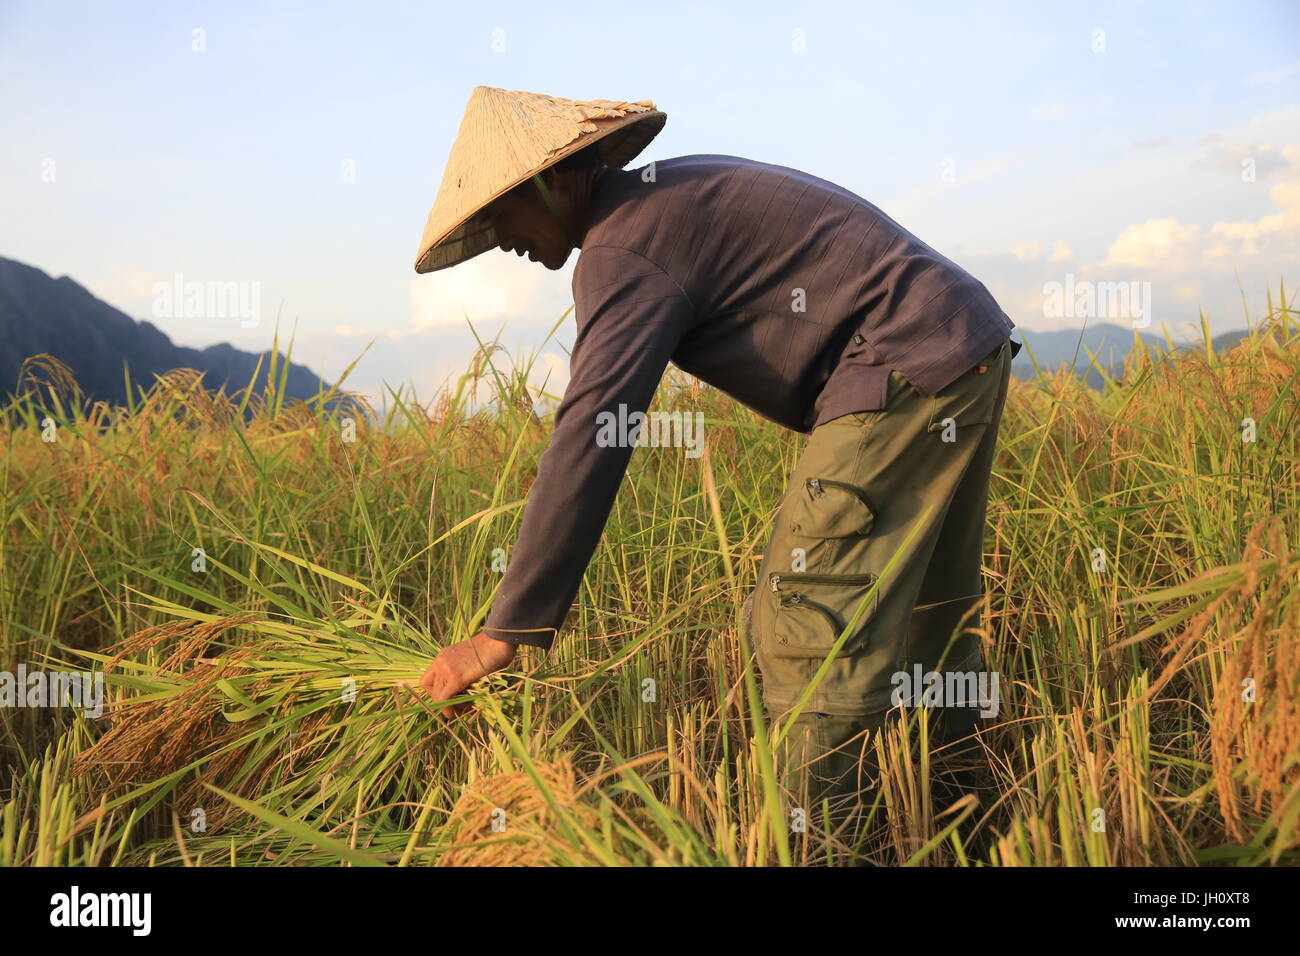 Farmer working in rice fields in rural landscape. Laos. Stock Photo